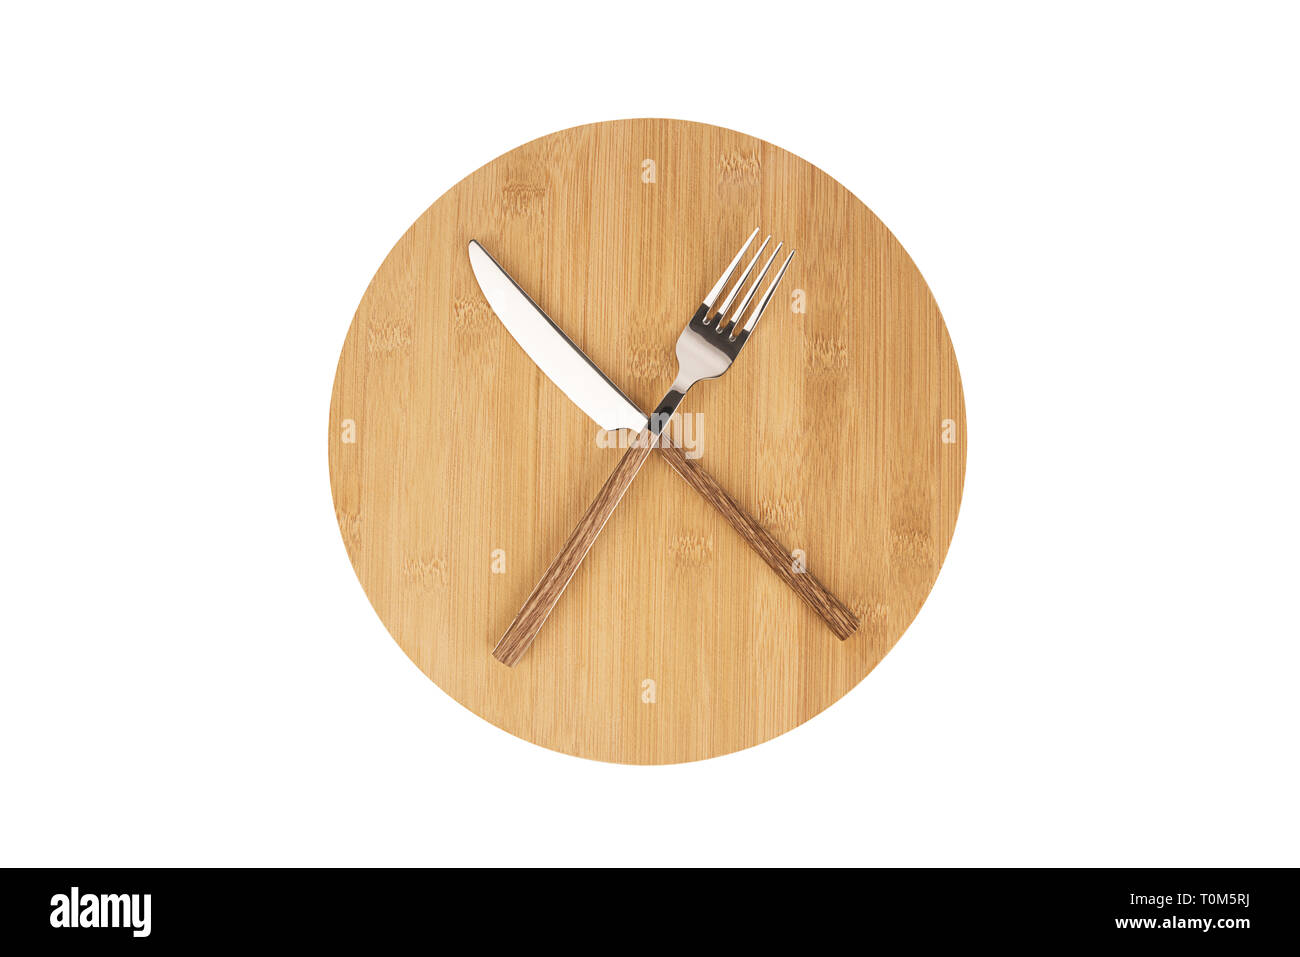 Tenedor y cuchara dispuestas en una placa de madera redondo. Concepto de dieta y ayuno intermitente. Foto de stock